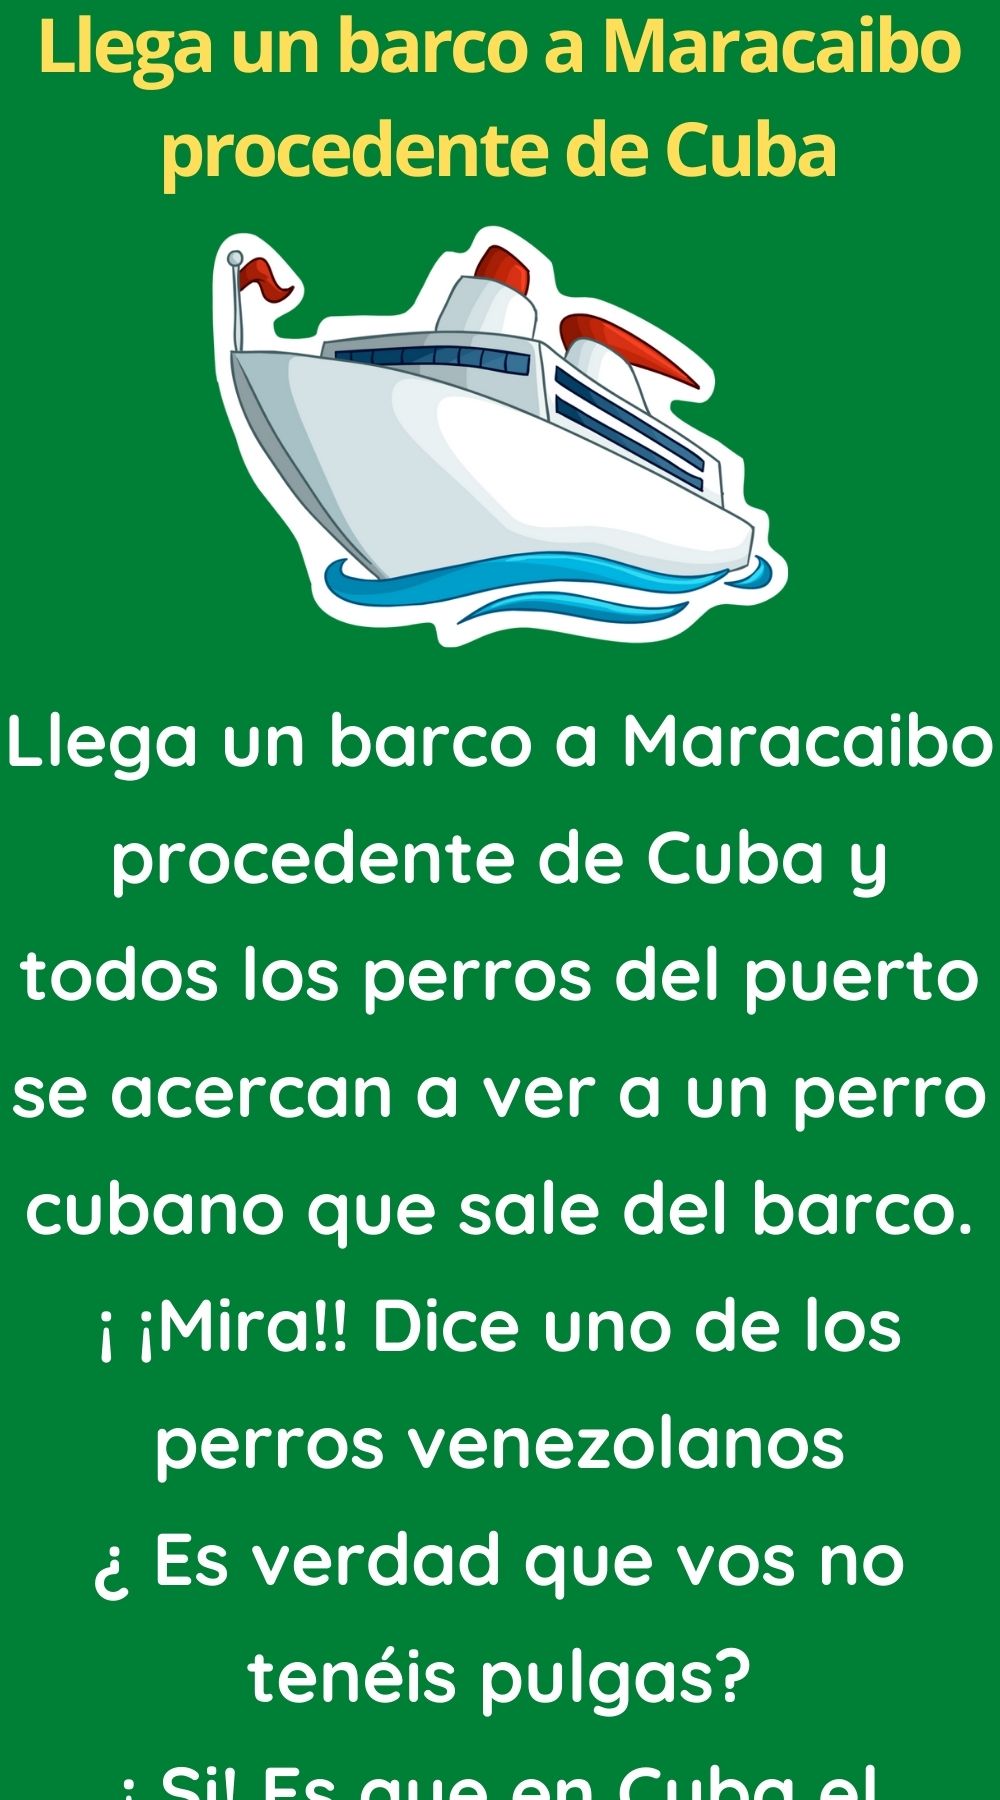 Llega un barco a Maracaibo procedente de Cuba